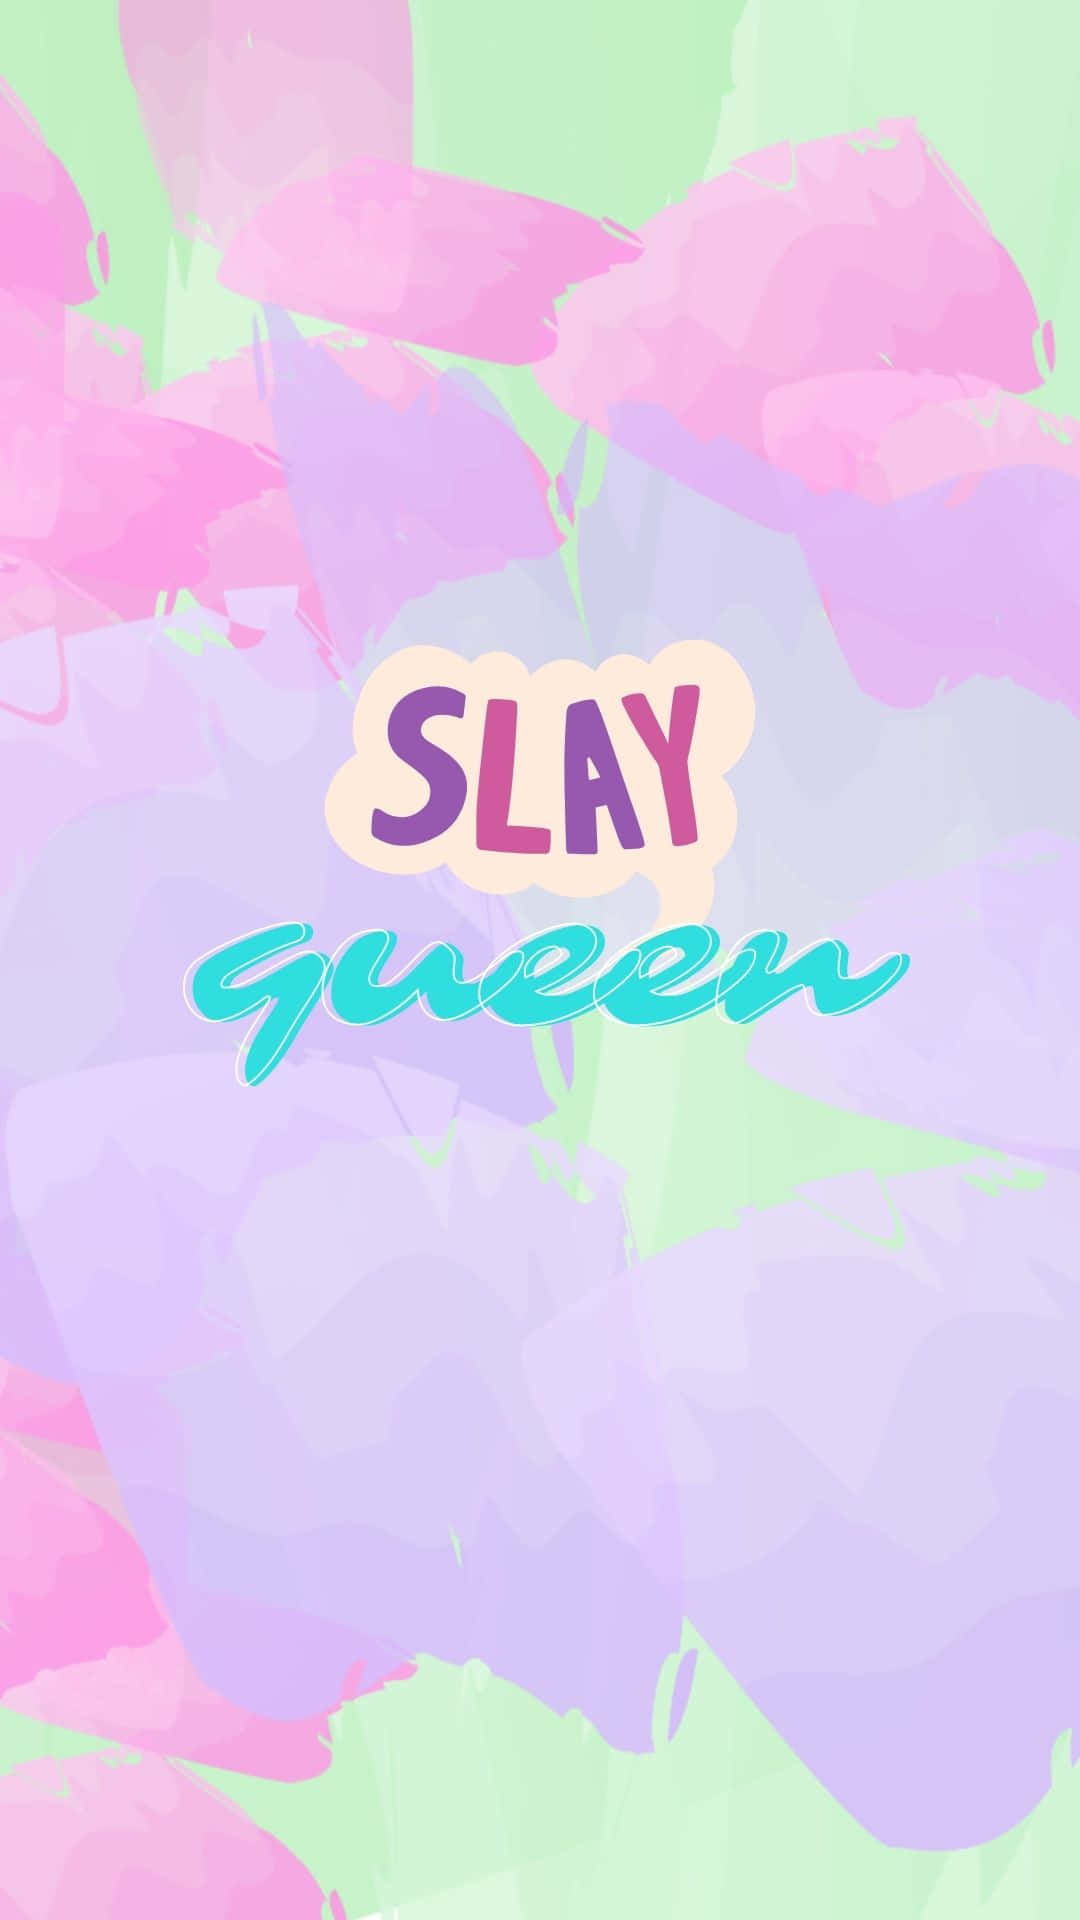 Slay Queen Graphic Design Wallpaper